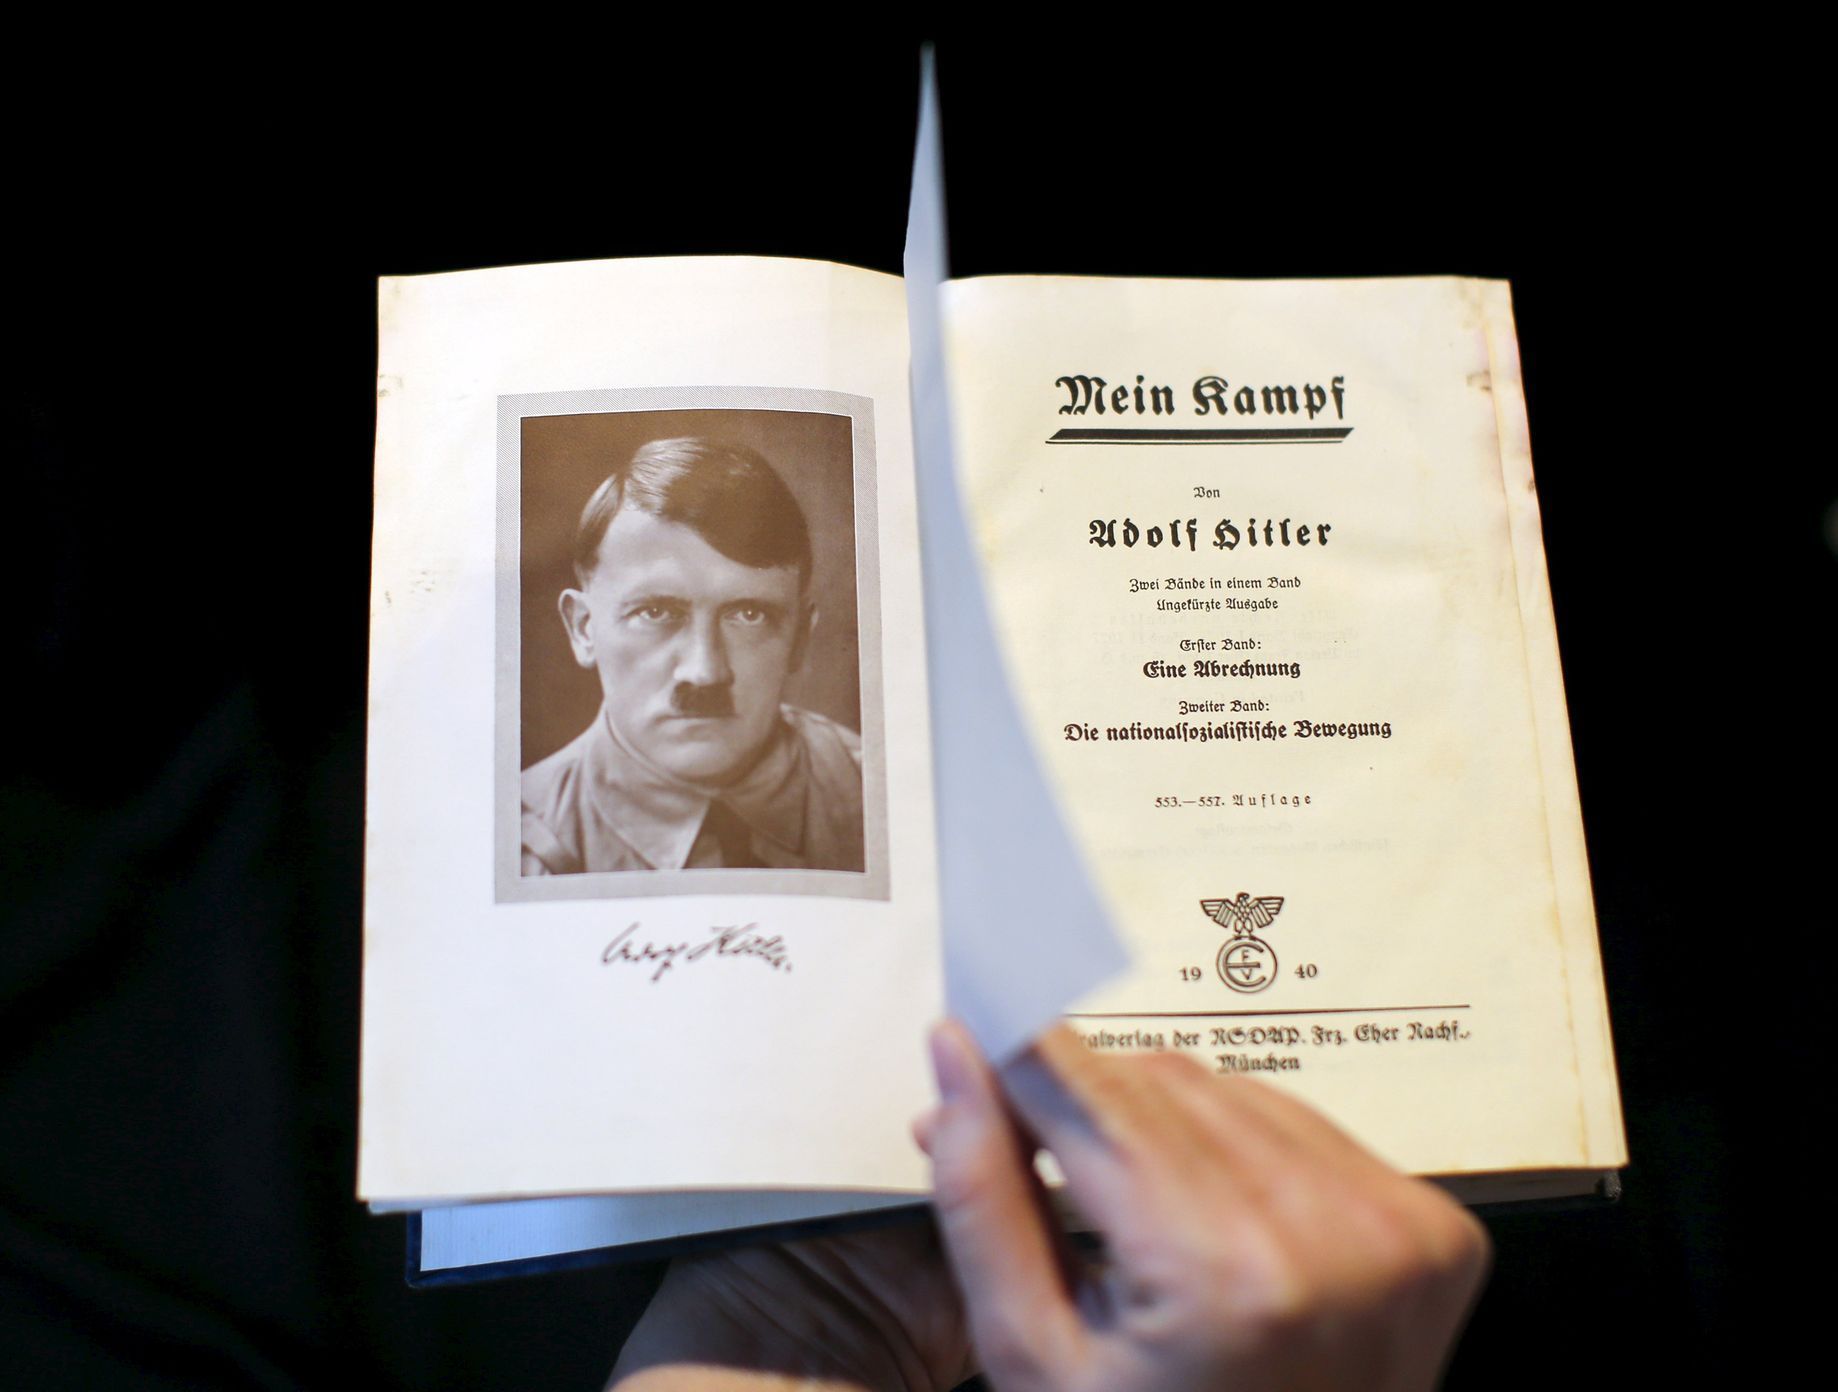 Původní vydání Hitlerova Mein Kampfu